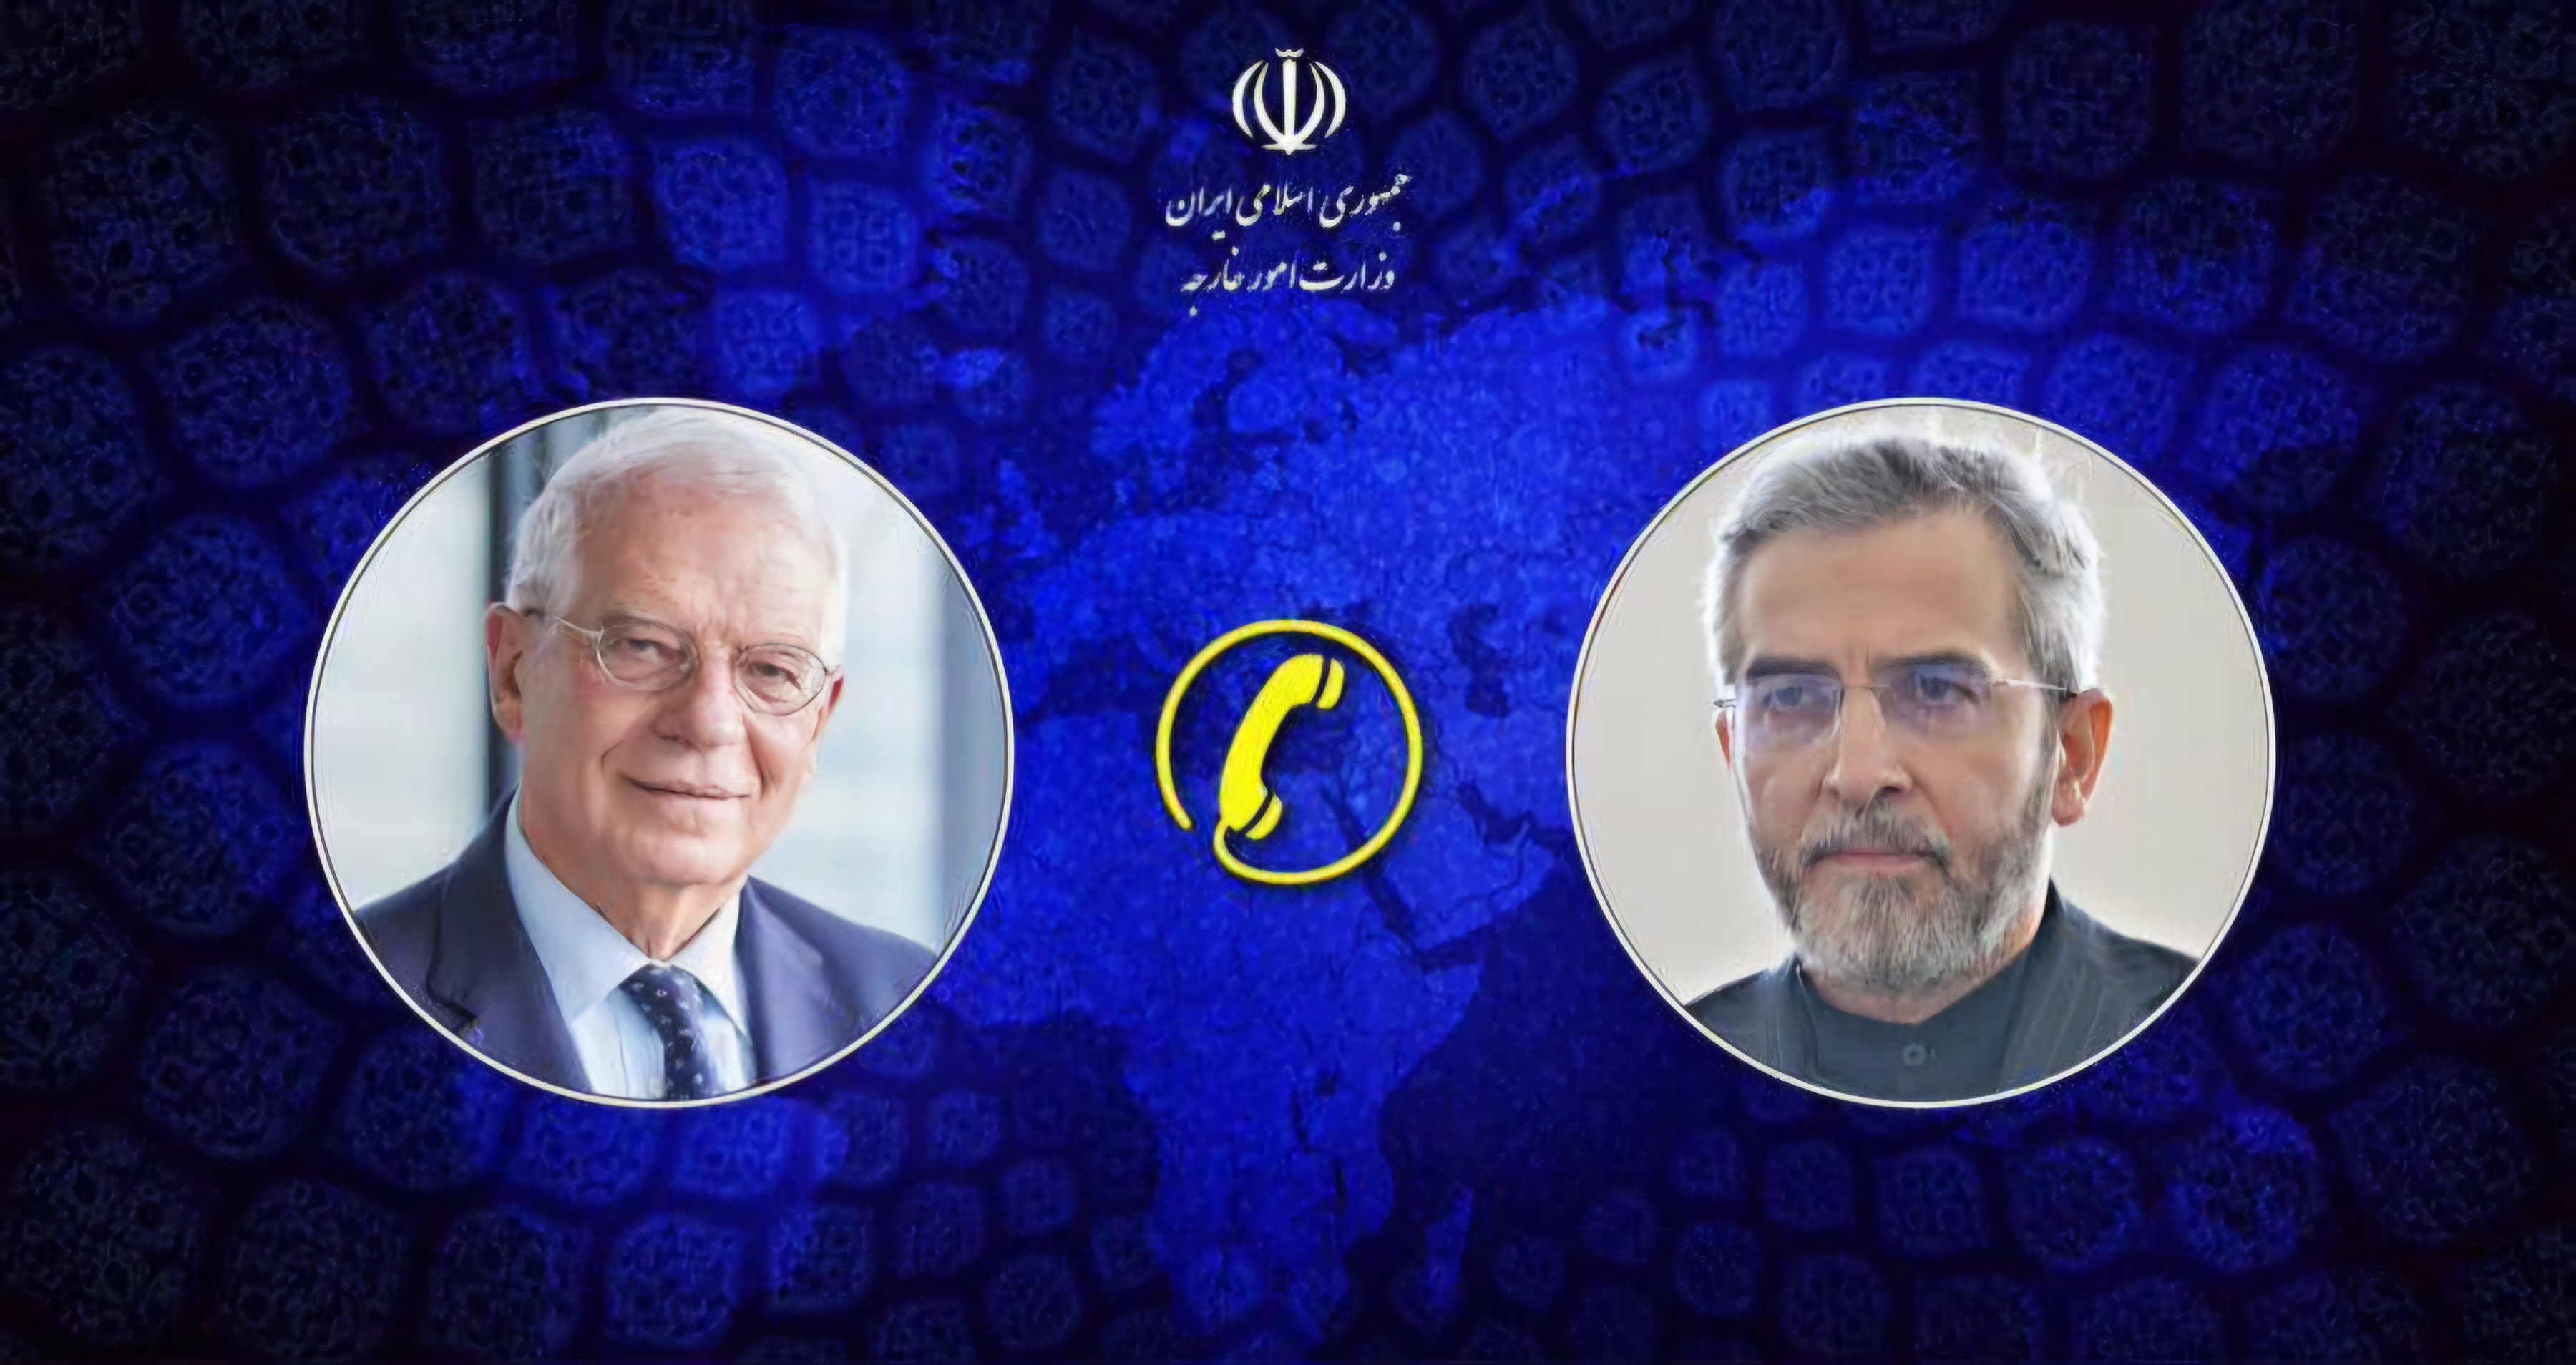 ایران از حق مشروع خود برای مجازات باند صهیونیستی استفاده خواهد کرد